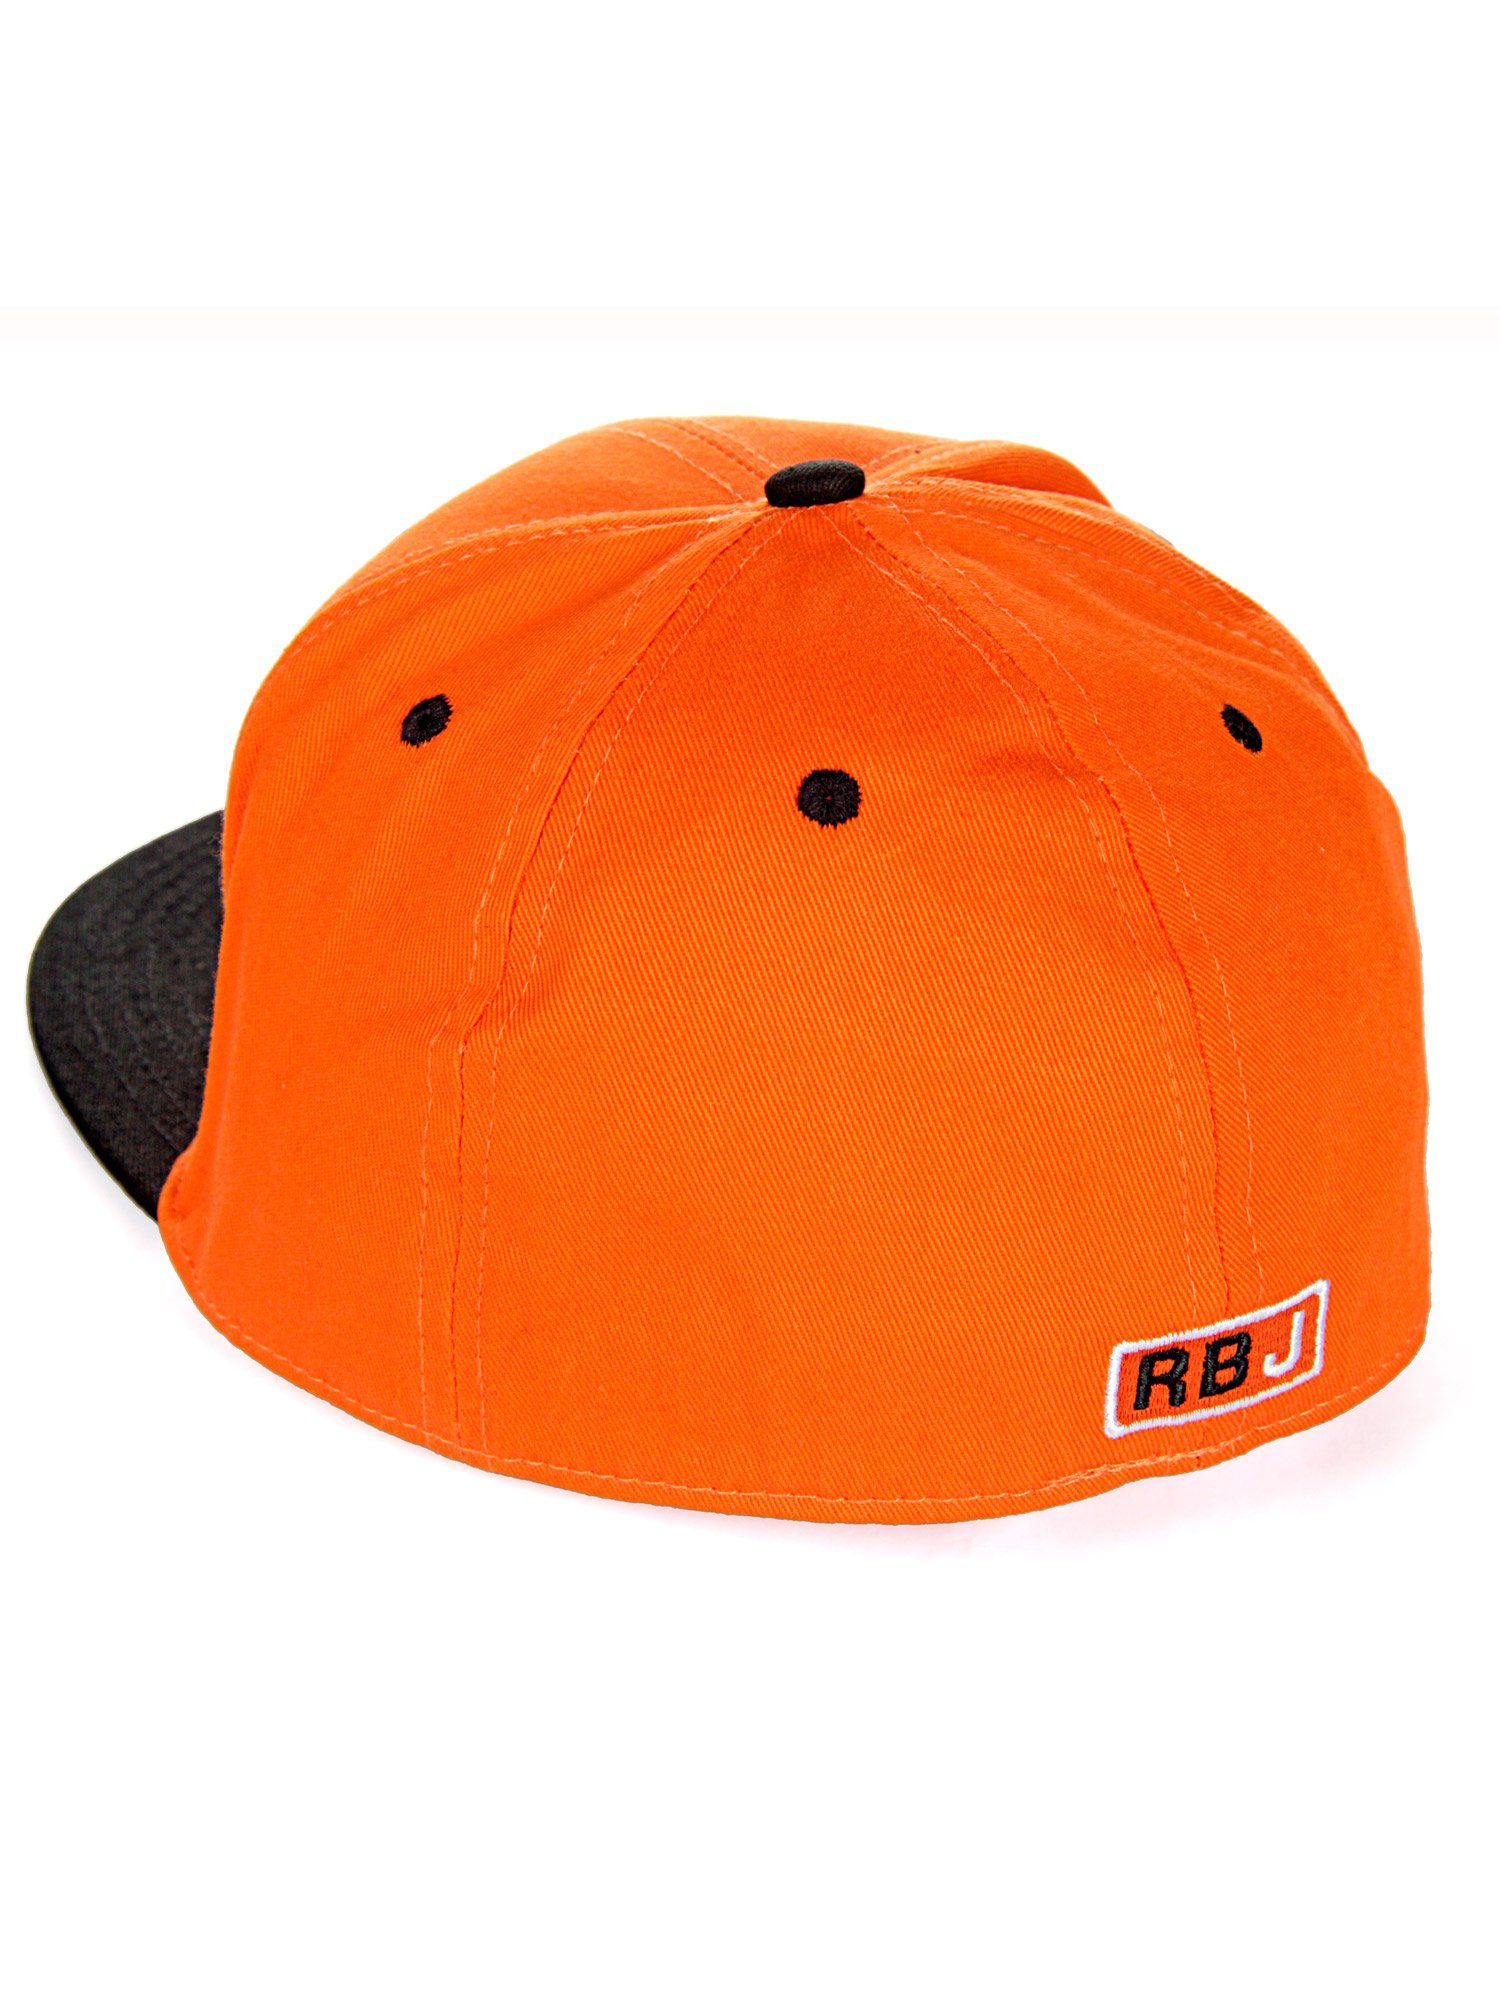 RedBridge Baseball Cap kontrastfarbigem Durham mit orange-schwarz Schirm